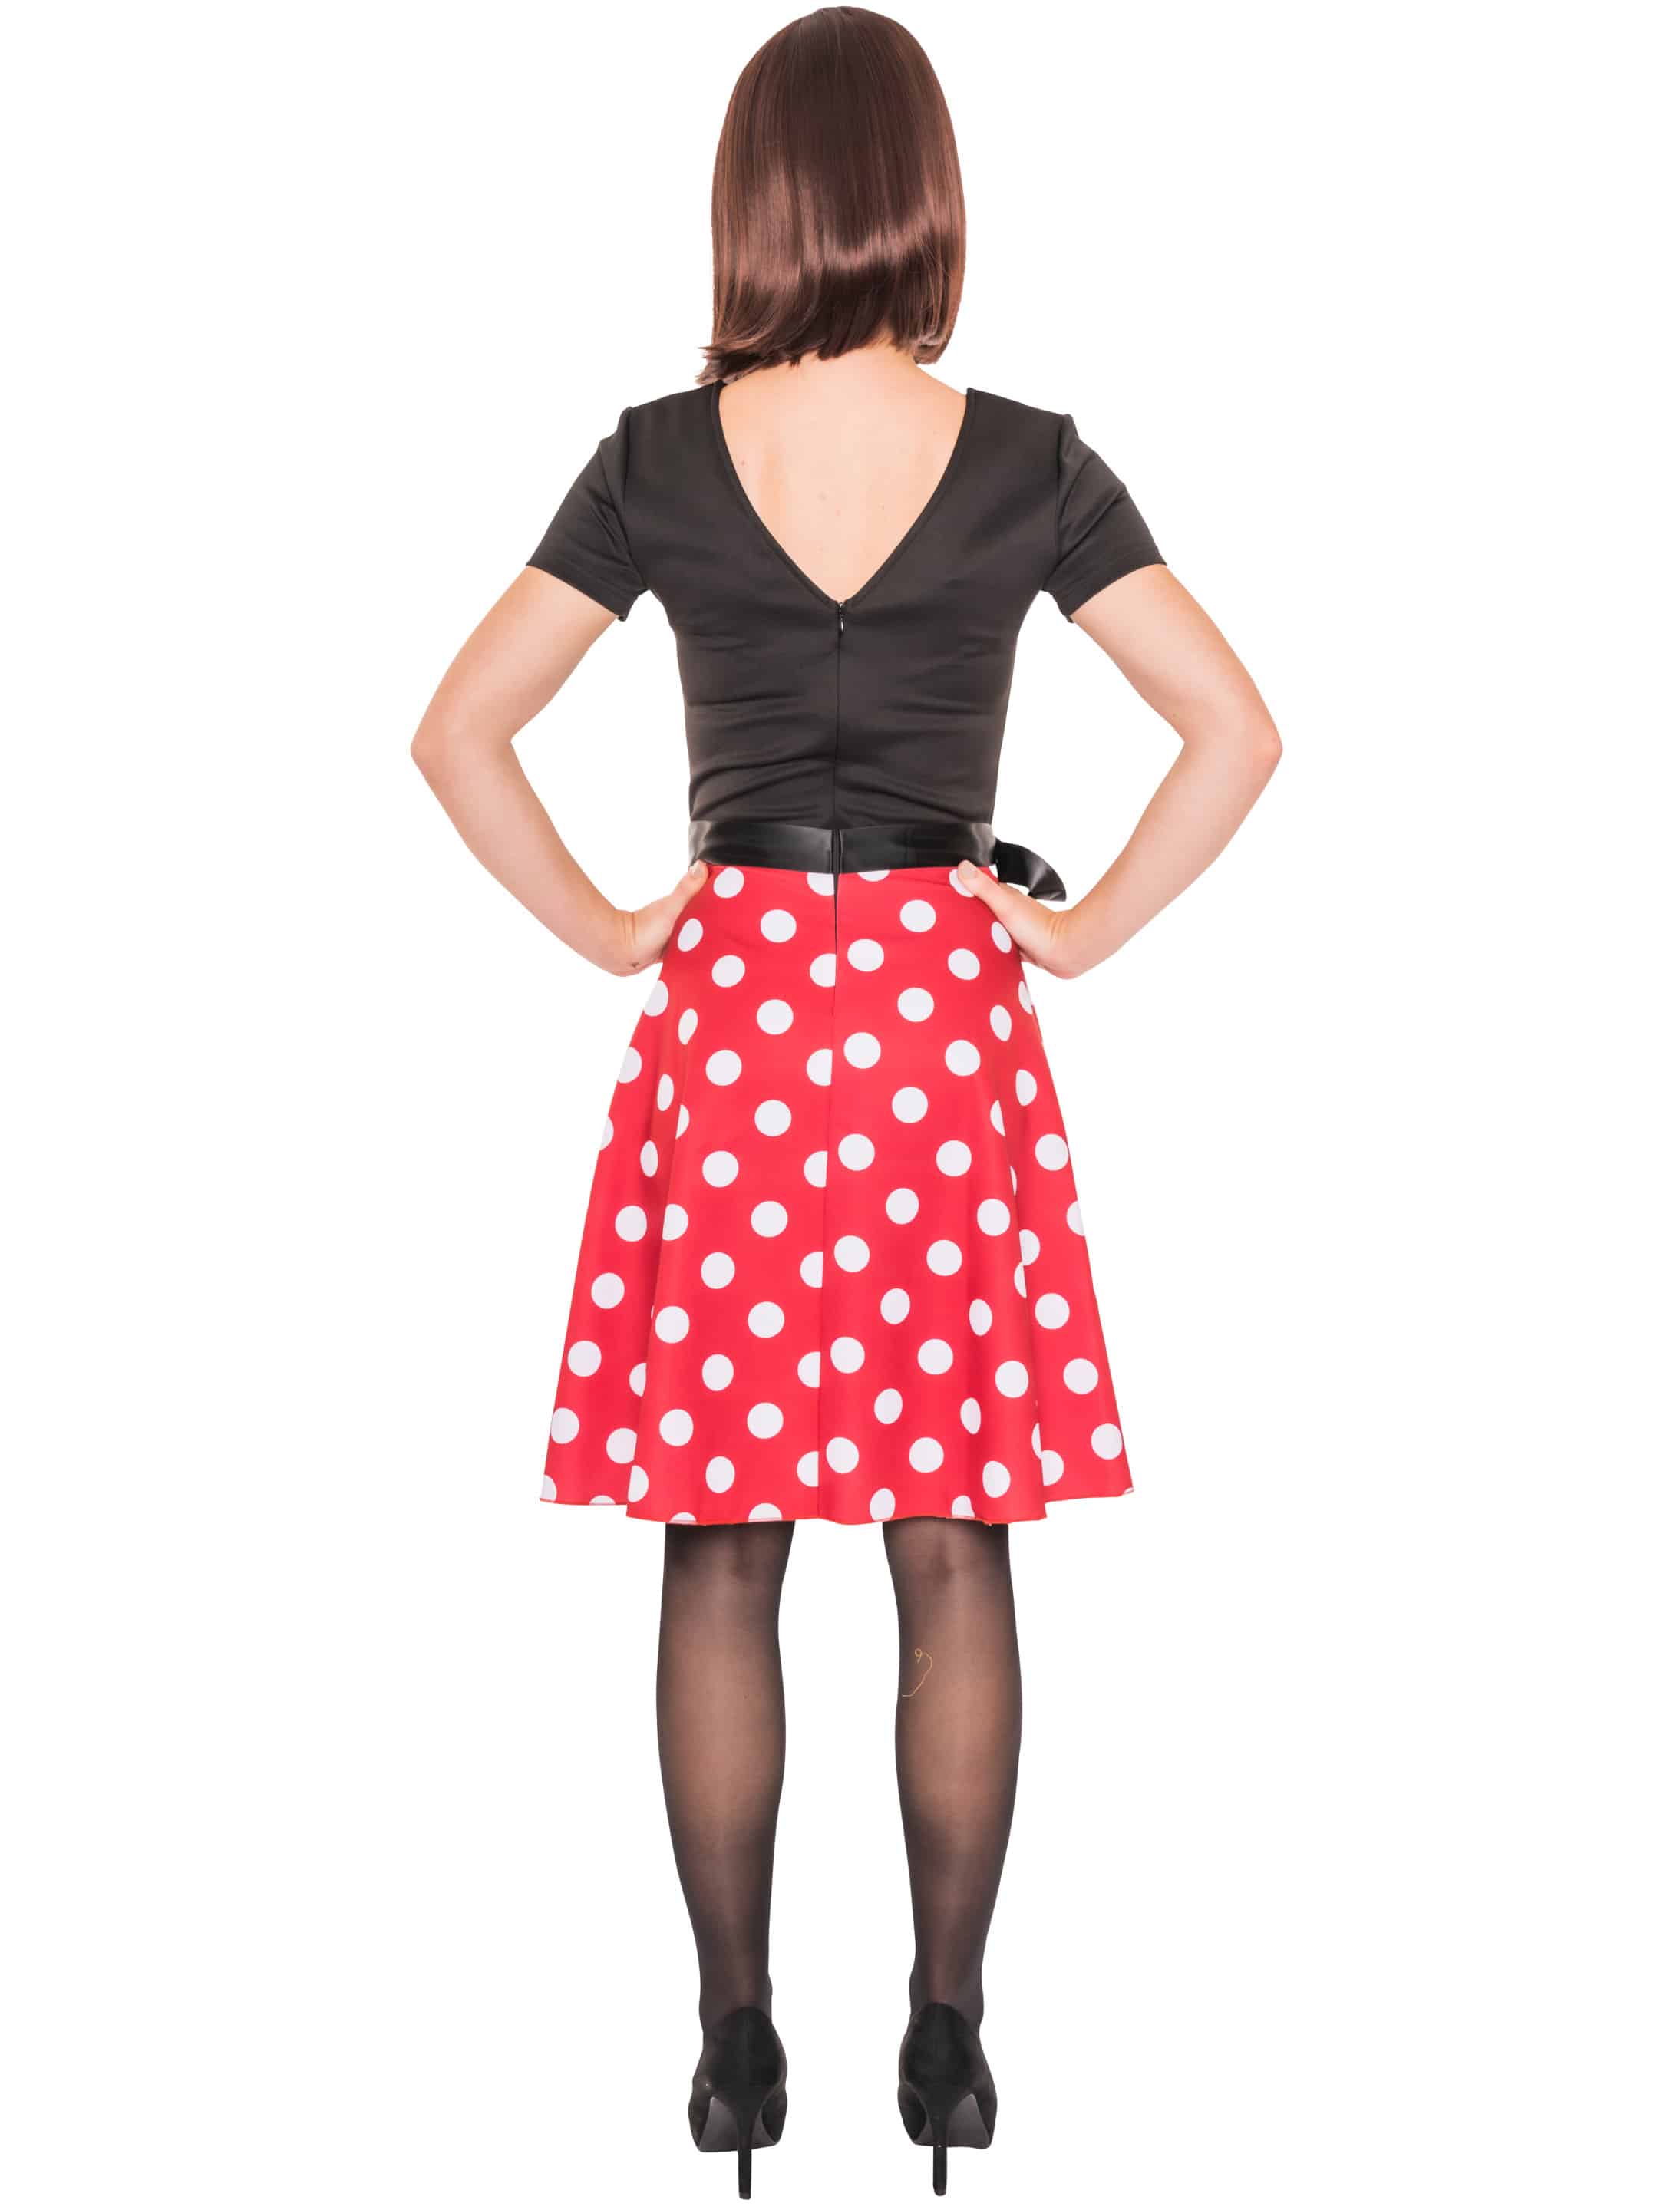 Kleid Maus mit Punkten schwarz/weiß/rot 2XL